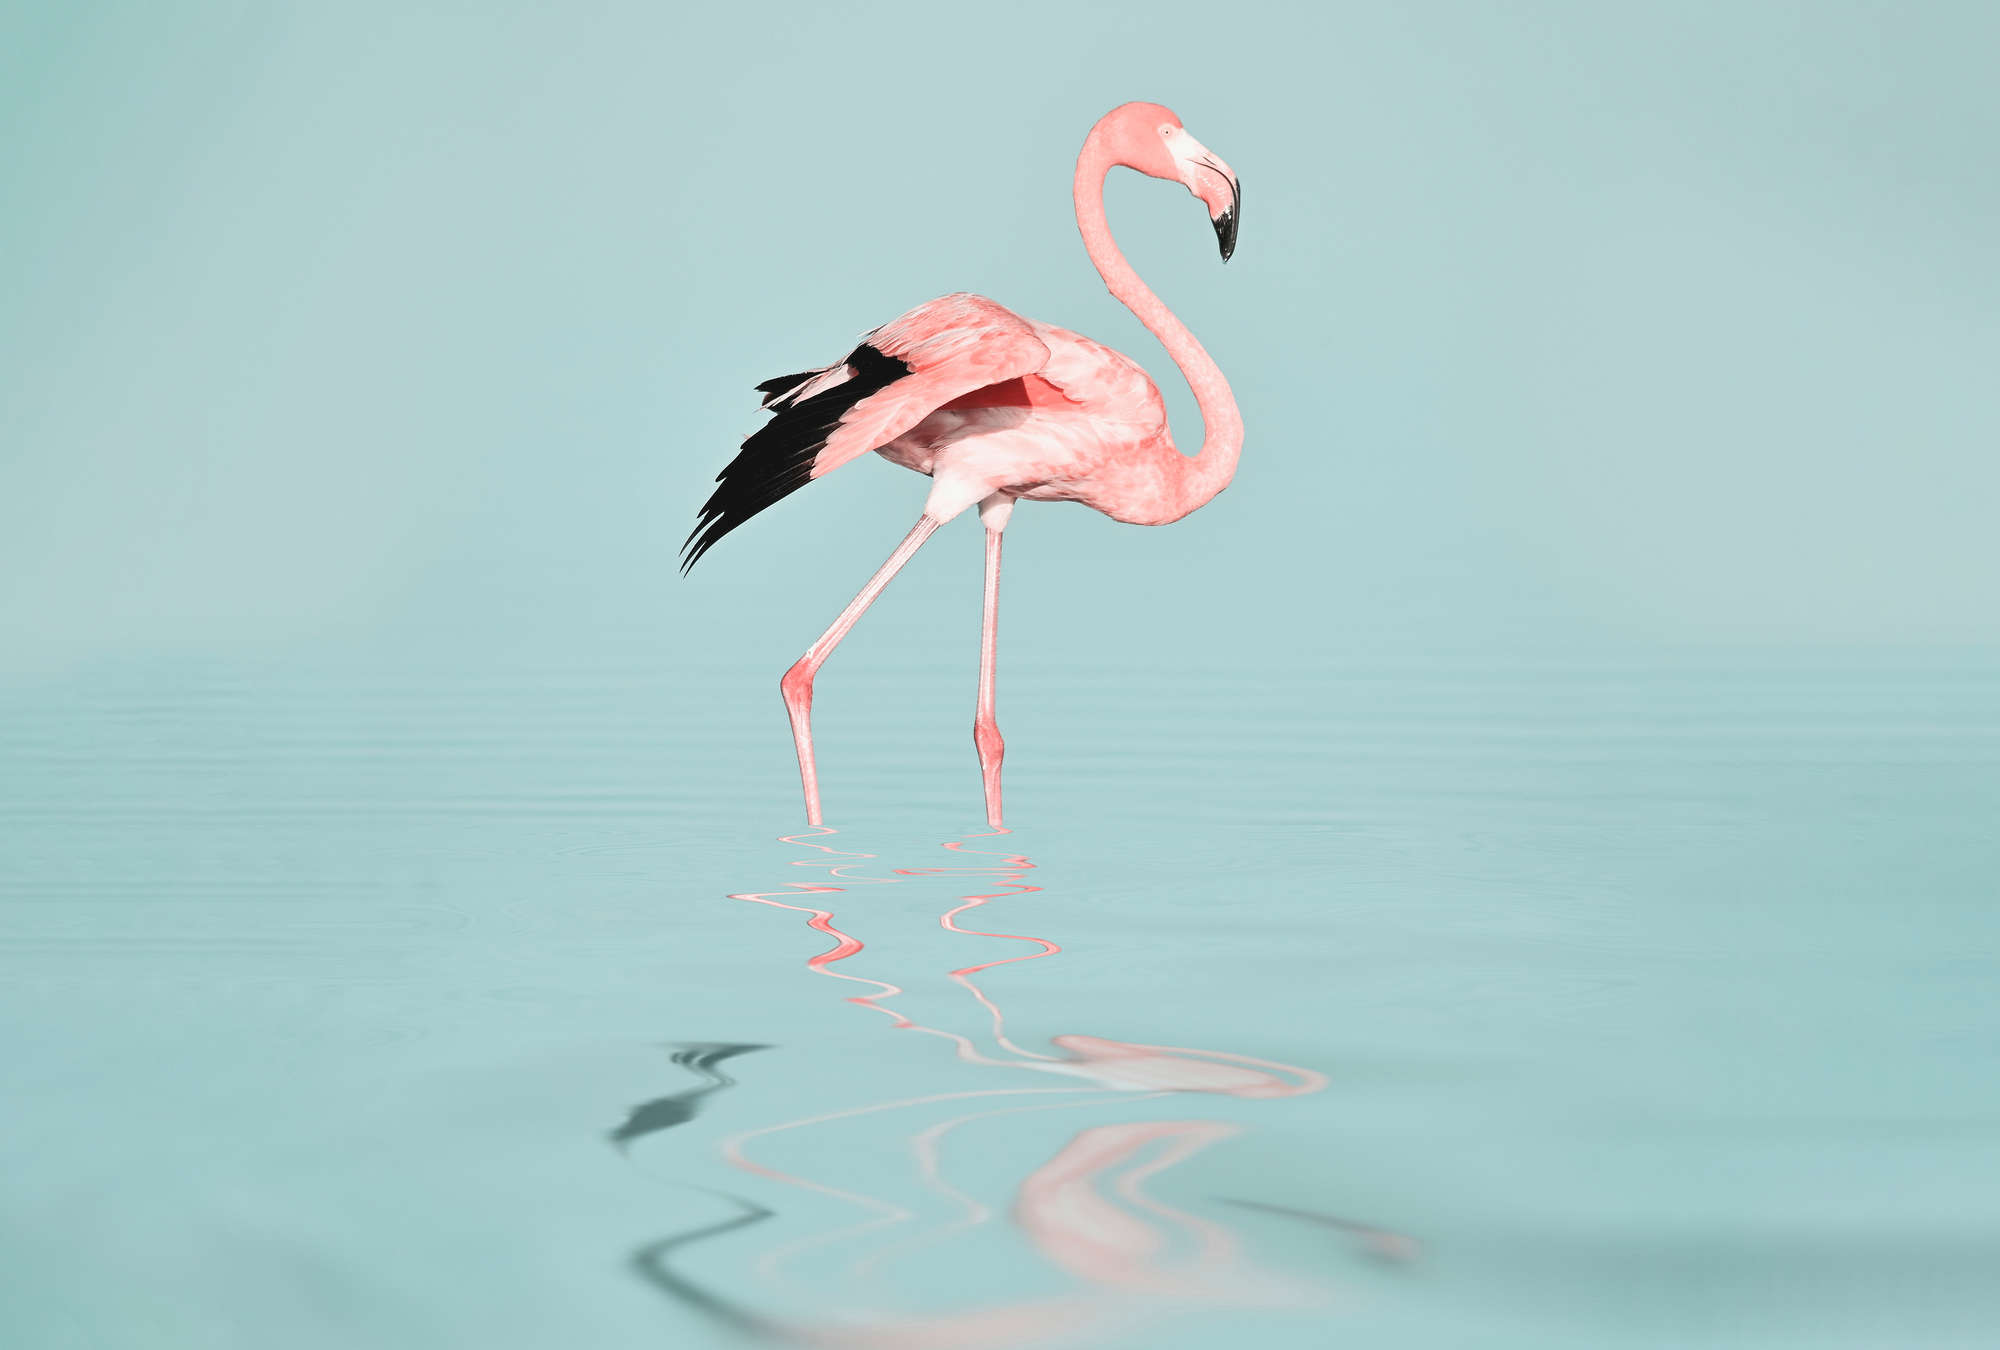             Fototapete mit Flamingo im Wasser – Pink & Türkis
        